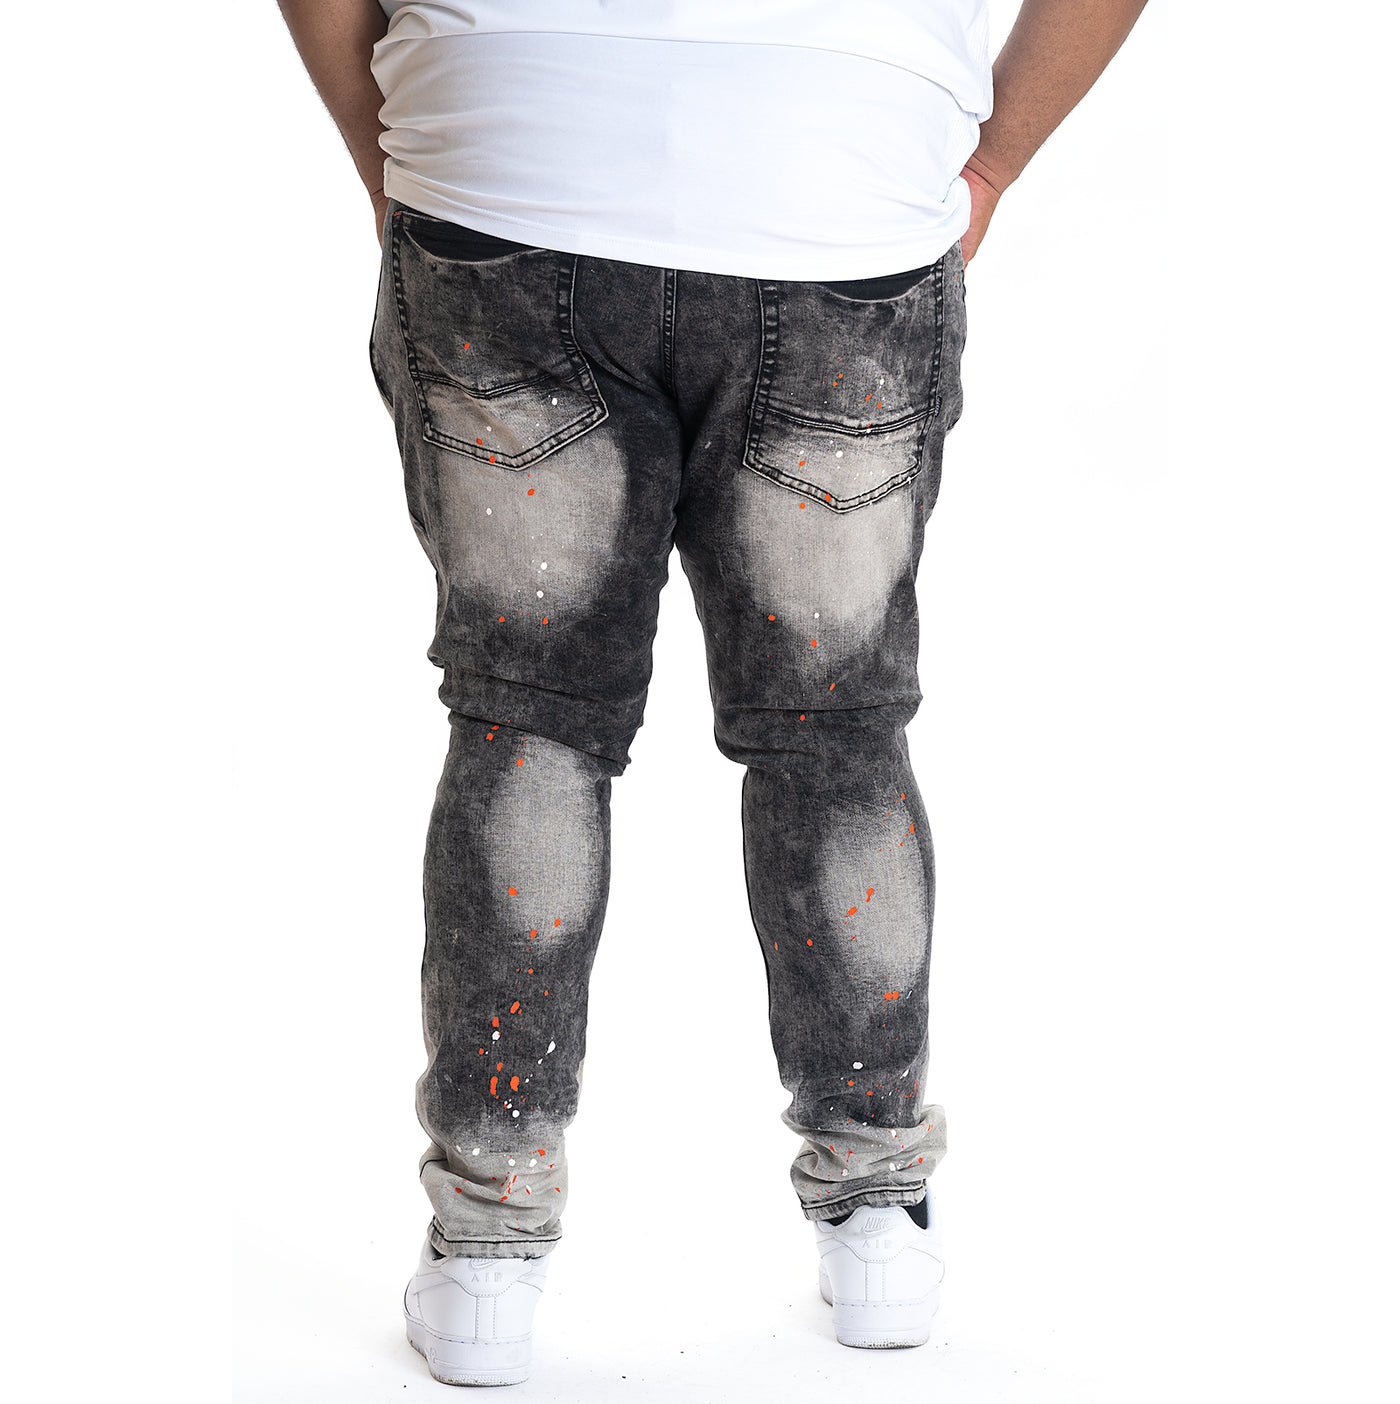 M1725 Shredded Denim Jeans with Paint Splashes - Black